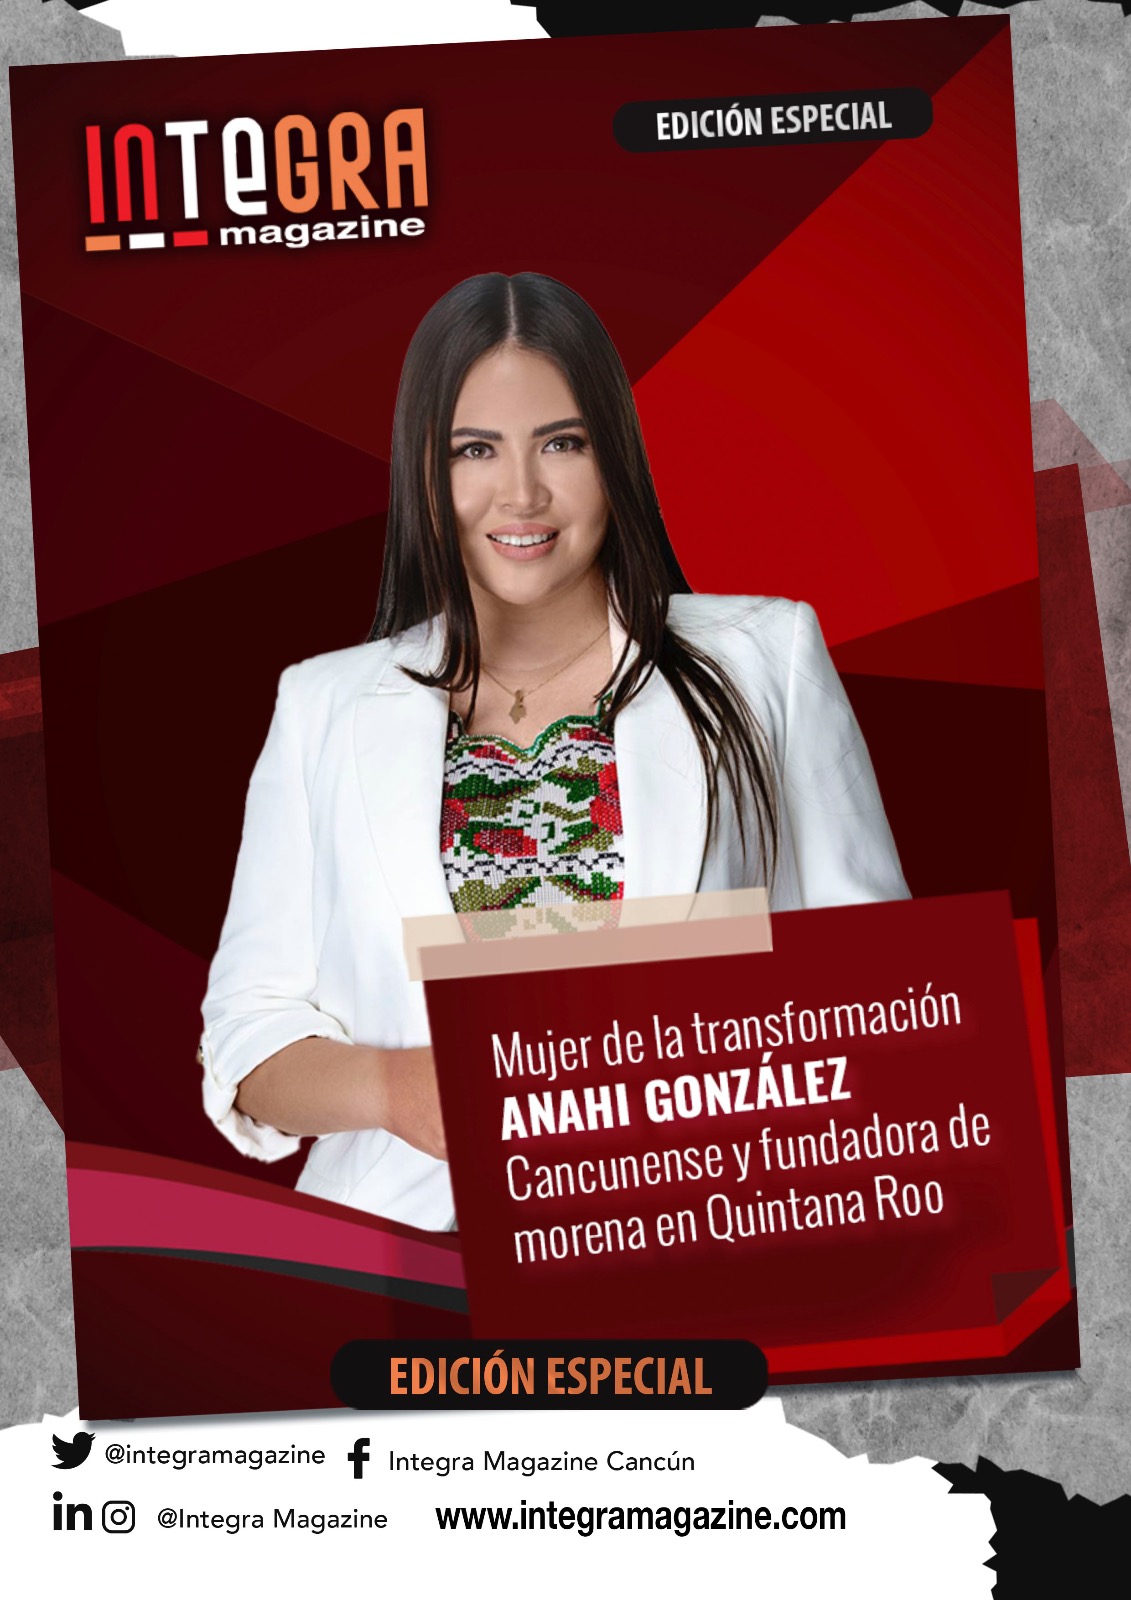 Edición especial Anahí González